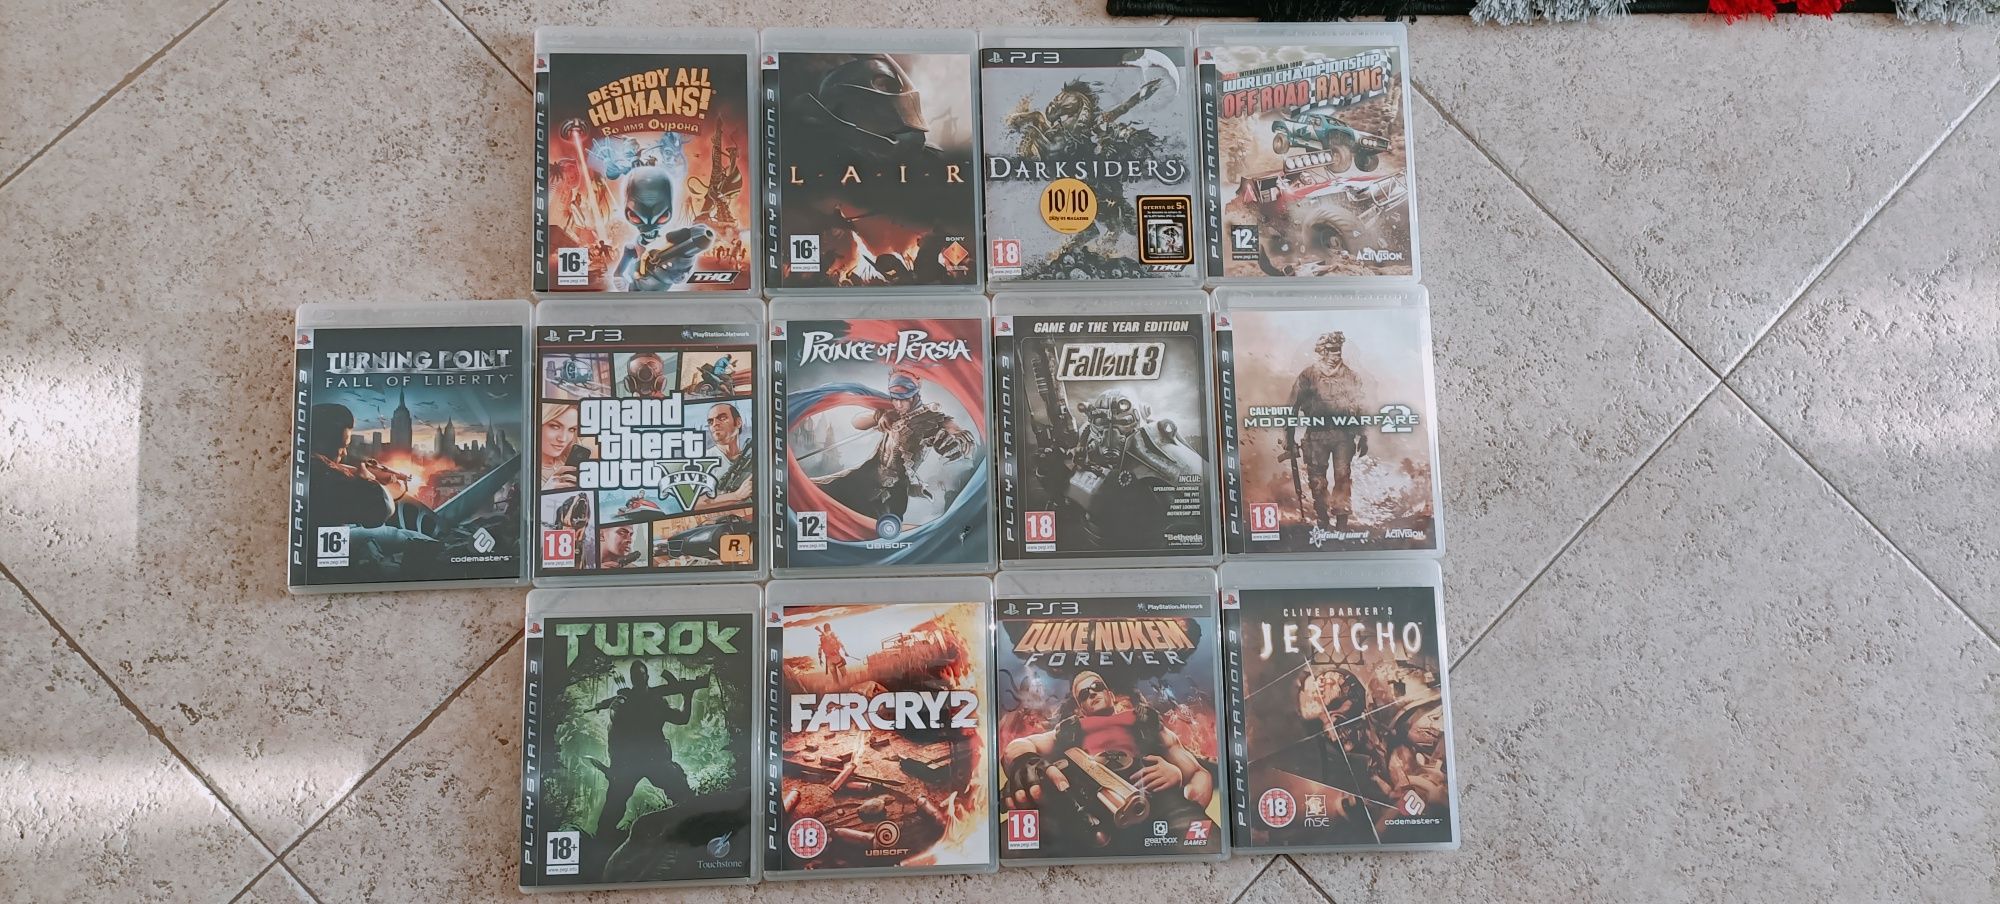 Jogos usados para PS3